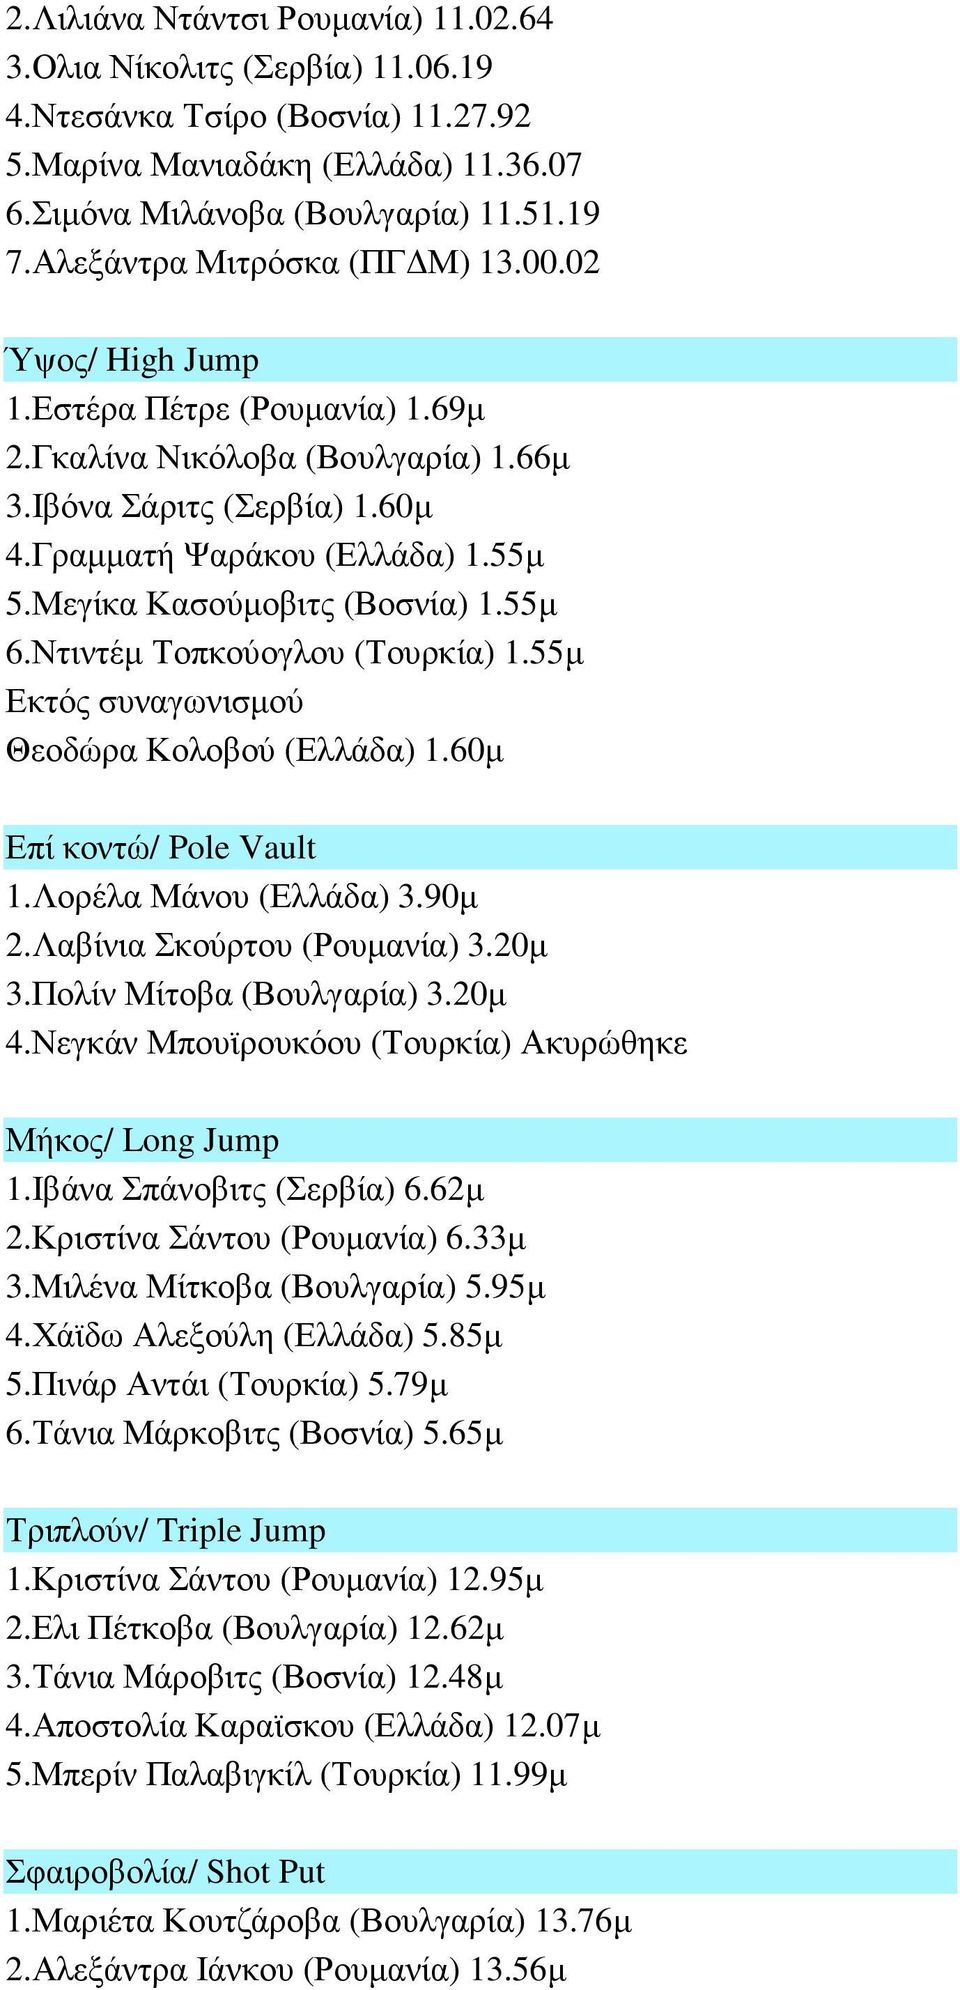 Μεγίκα Κασούµοβιτς (Βοσνία) 1.55µ 6.Ντιντέµ Τοπκούογλου (Τουρκία) 1.55µ Θεοδώρα Κολοβού (Ελλάδα) 1.60µ Επί κοντώ/ Pole Vault 1.Λορέλα Μάνου (Ελλάδα) 3.90µ 2.Λαβίνια Σκούρτου (Ρουµανία) 3.20µ 3.